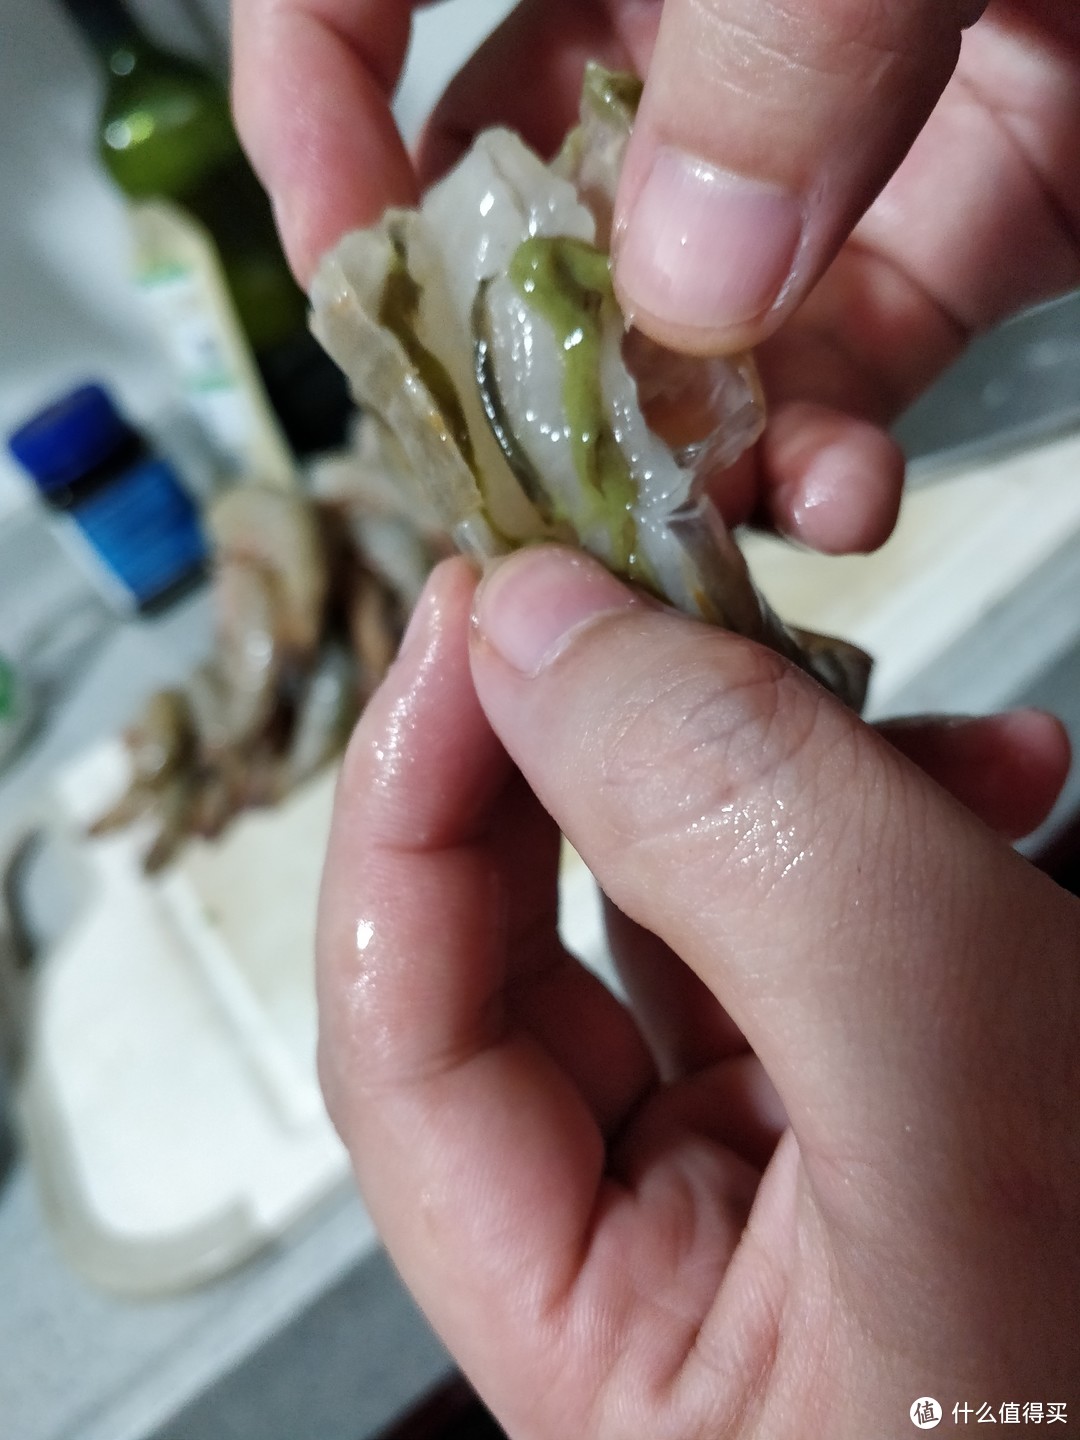 野生虾吃的海藻之类的食物